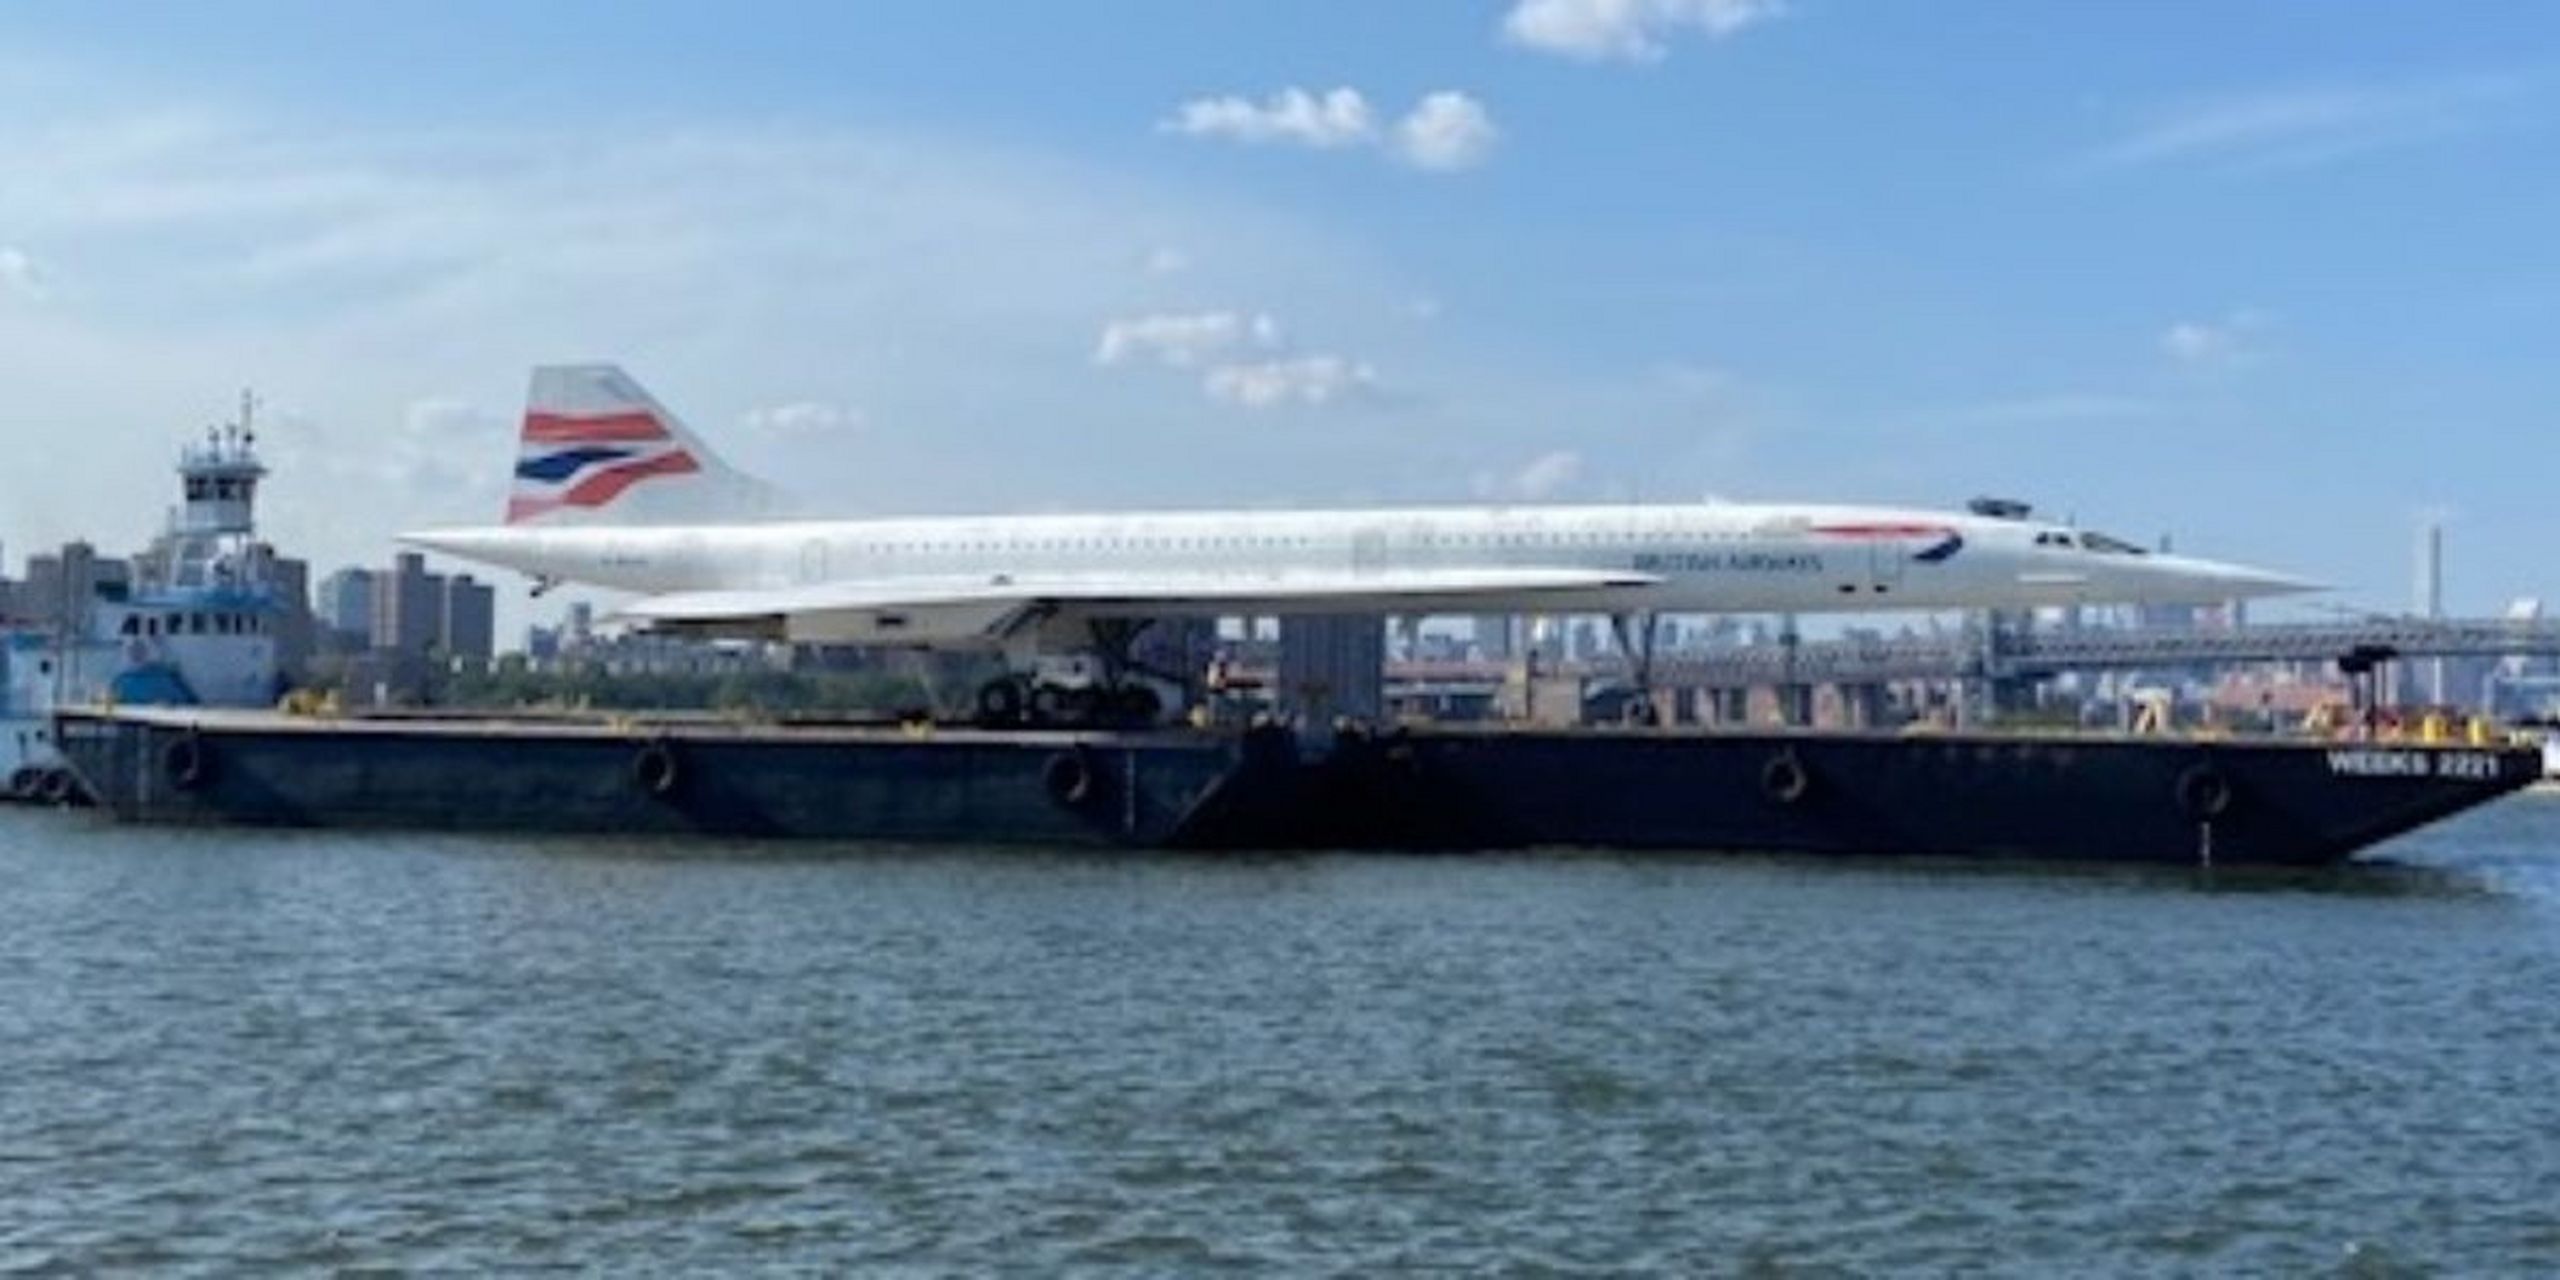 协和式飞机作为一种具有重要历史意义和文化价值的飞机,其被吊出纽约